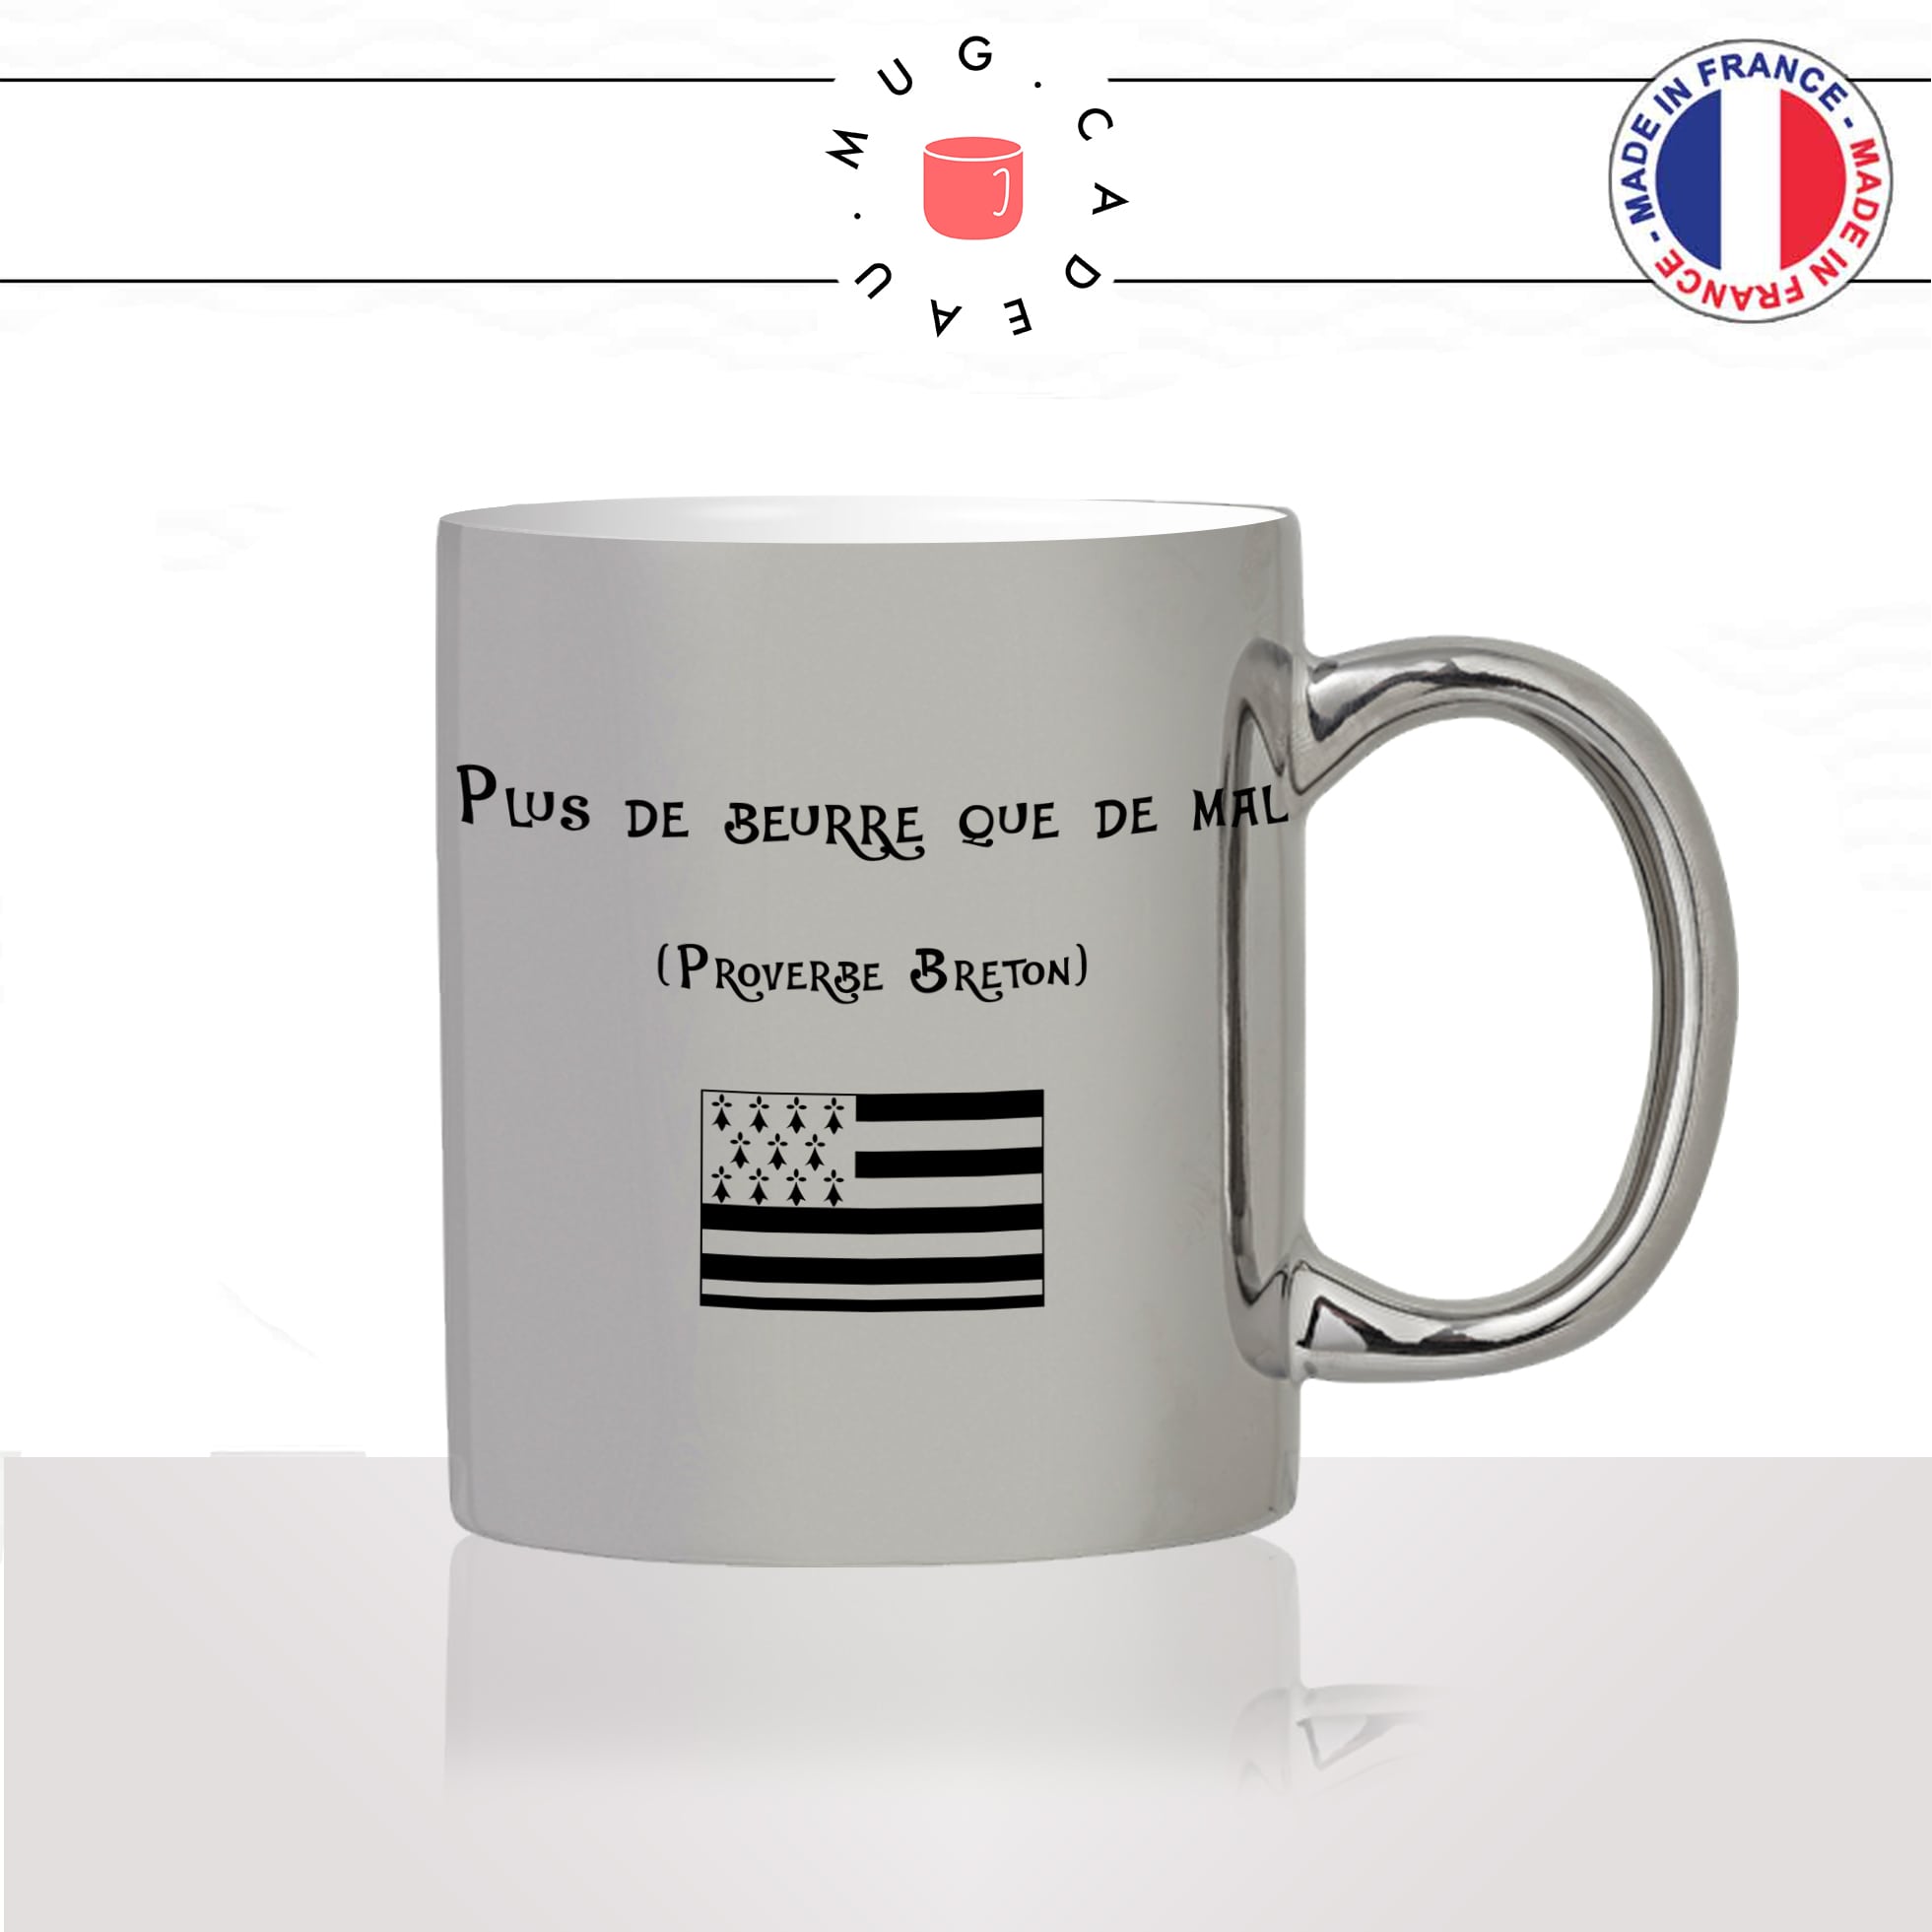 mug-tasse-argent-argenté-silver-breton-bretagne-citation-proverbe-plus-de-beurre-que-de-mal-femme-homme-idée-cadeau-fun-cool-café-thé-original2-min